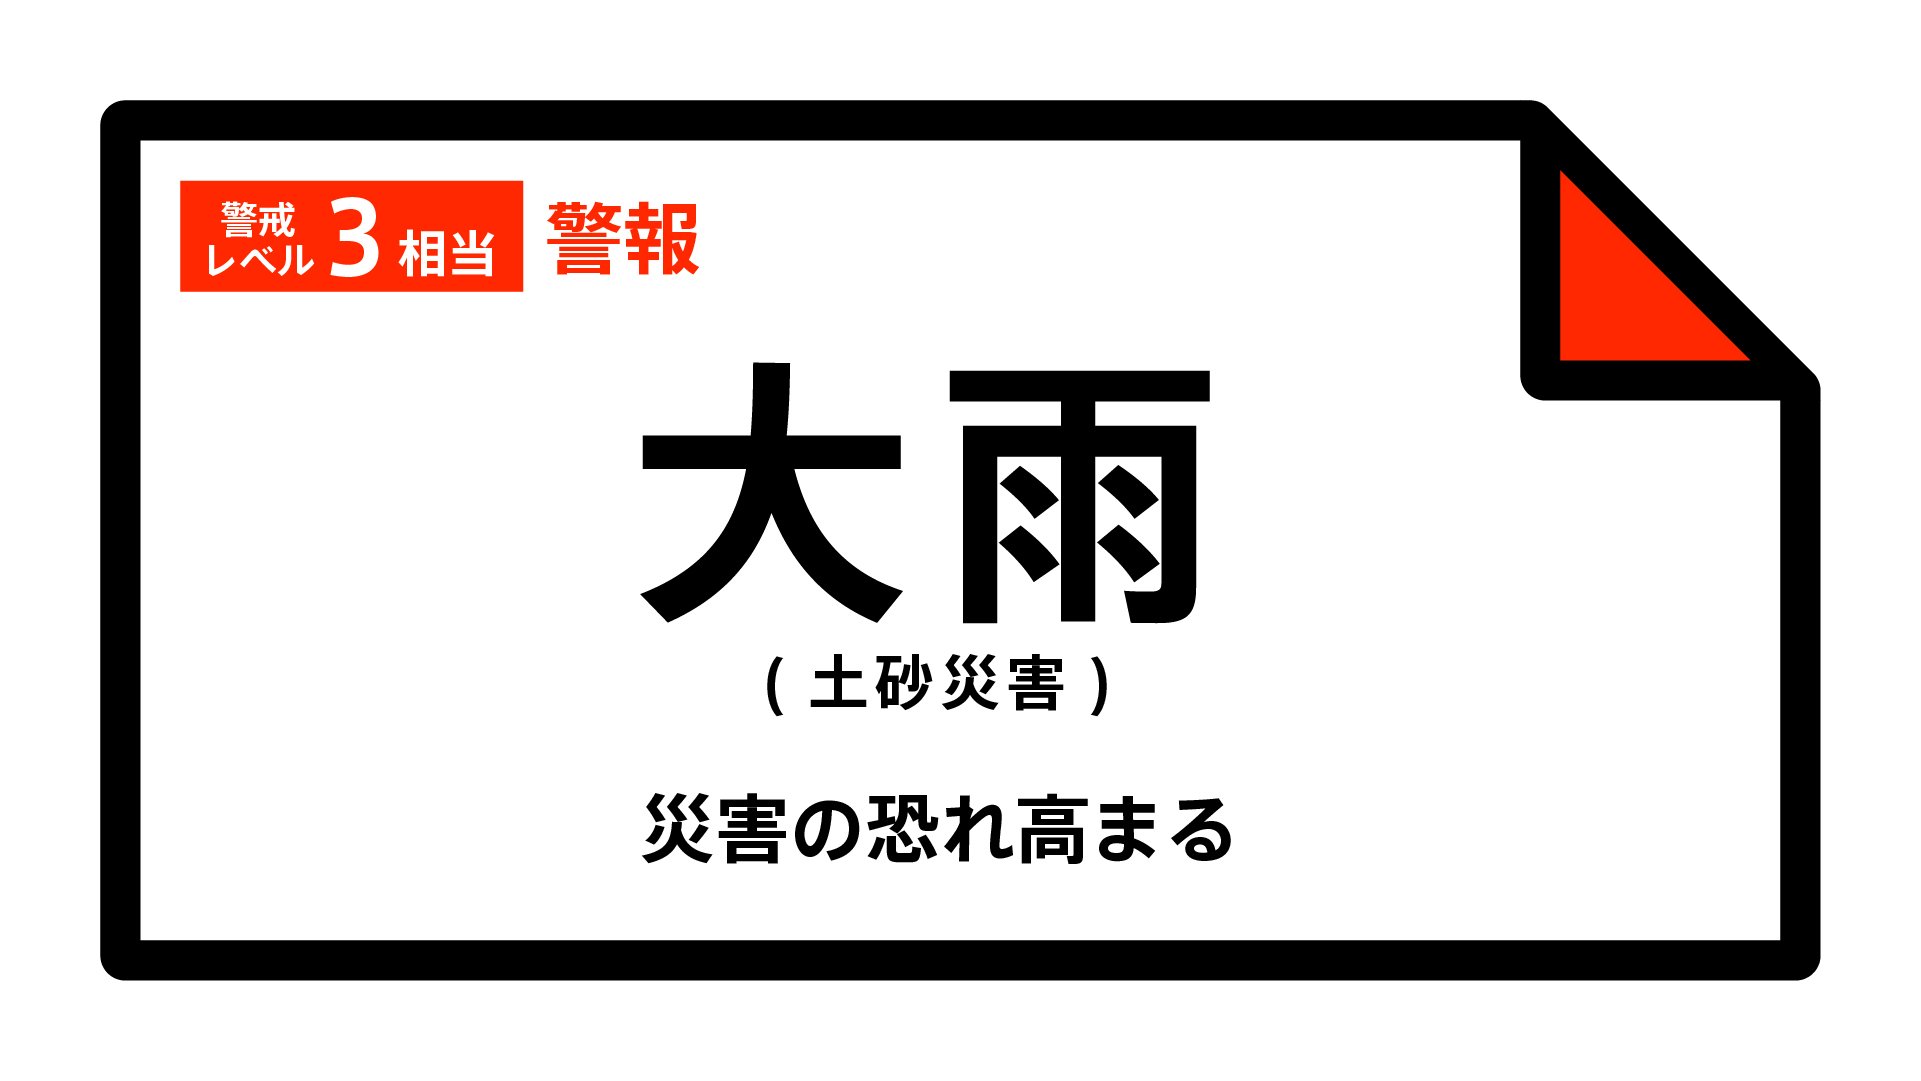 【大雨警報】静岡県・富士宮市、伊豆市に発表